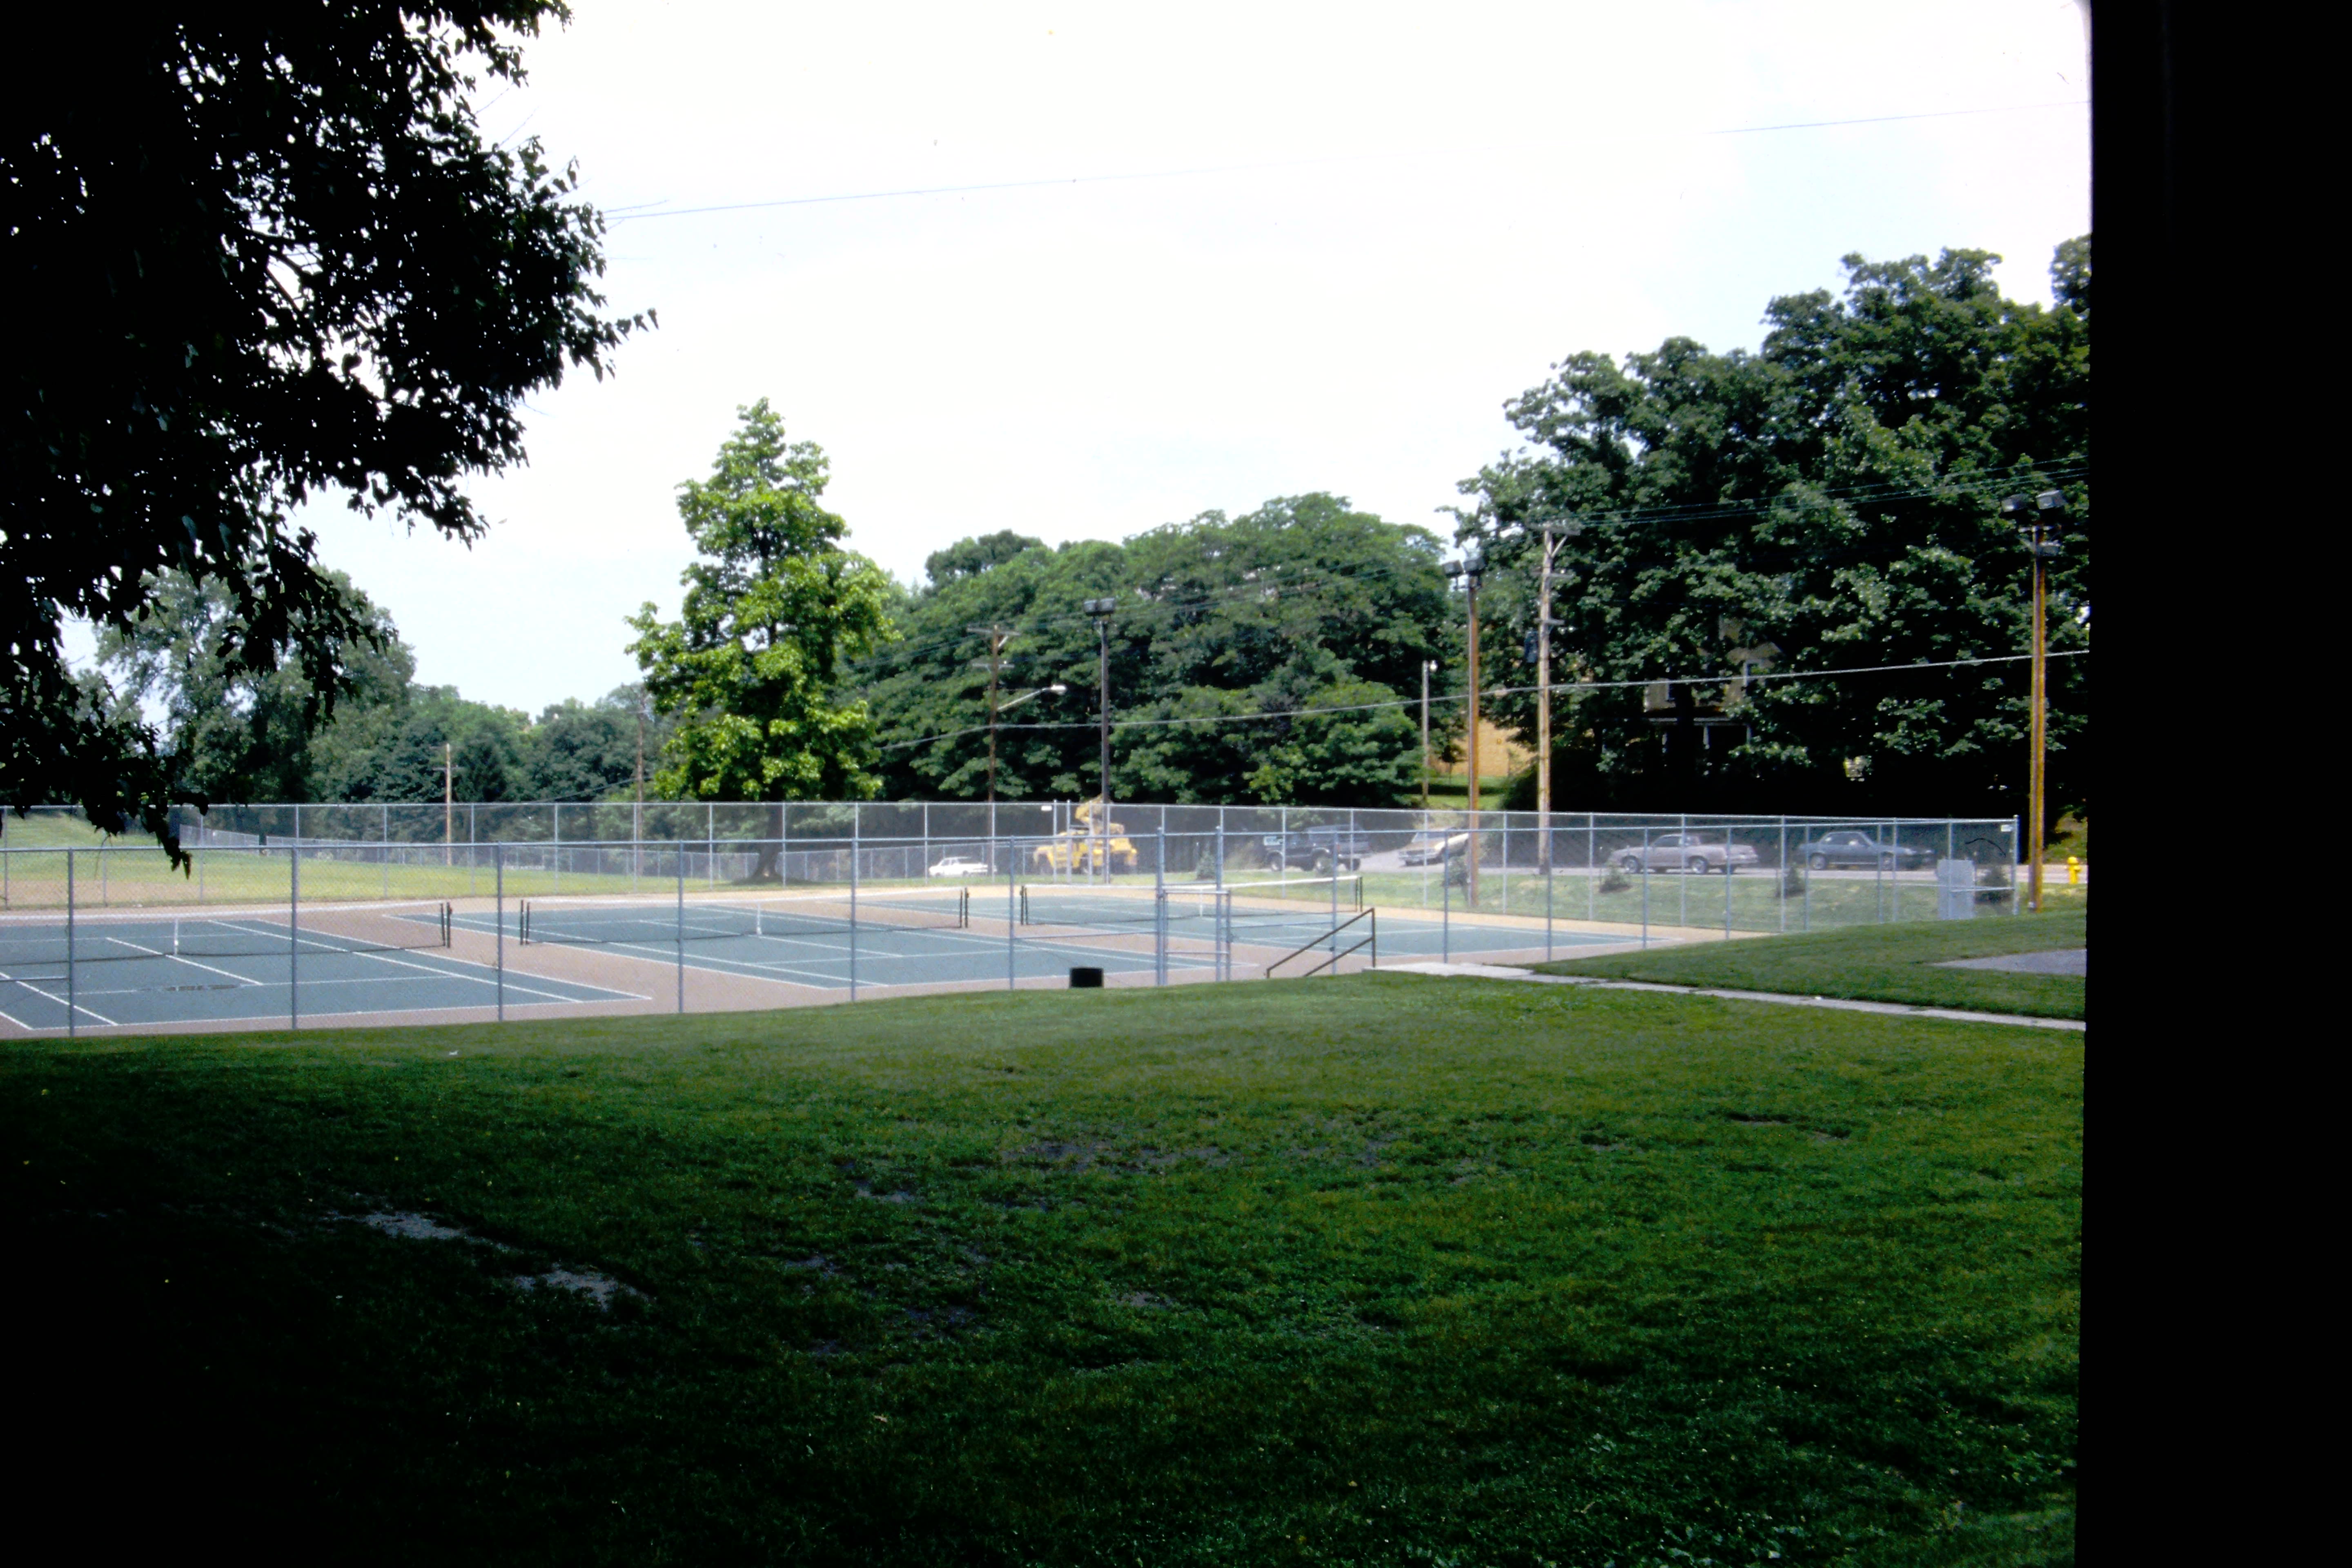 Lincoln Park tennis